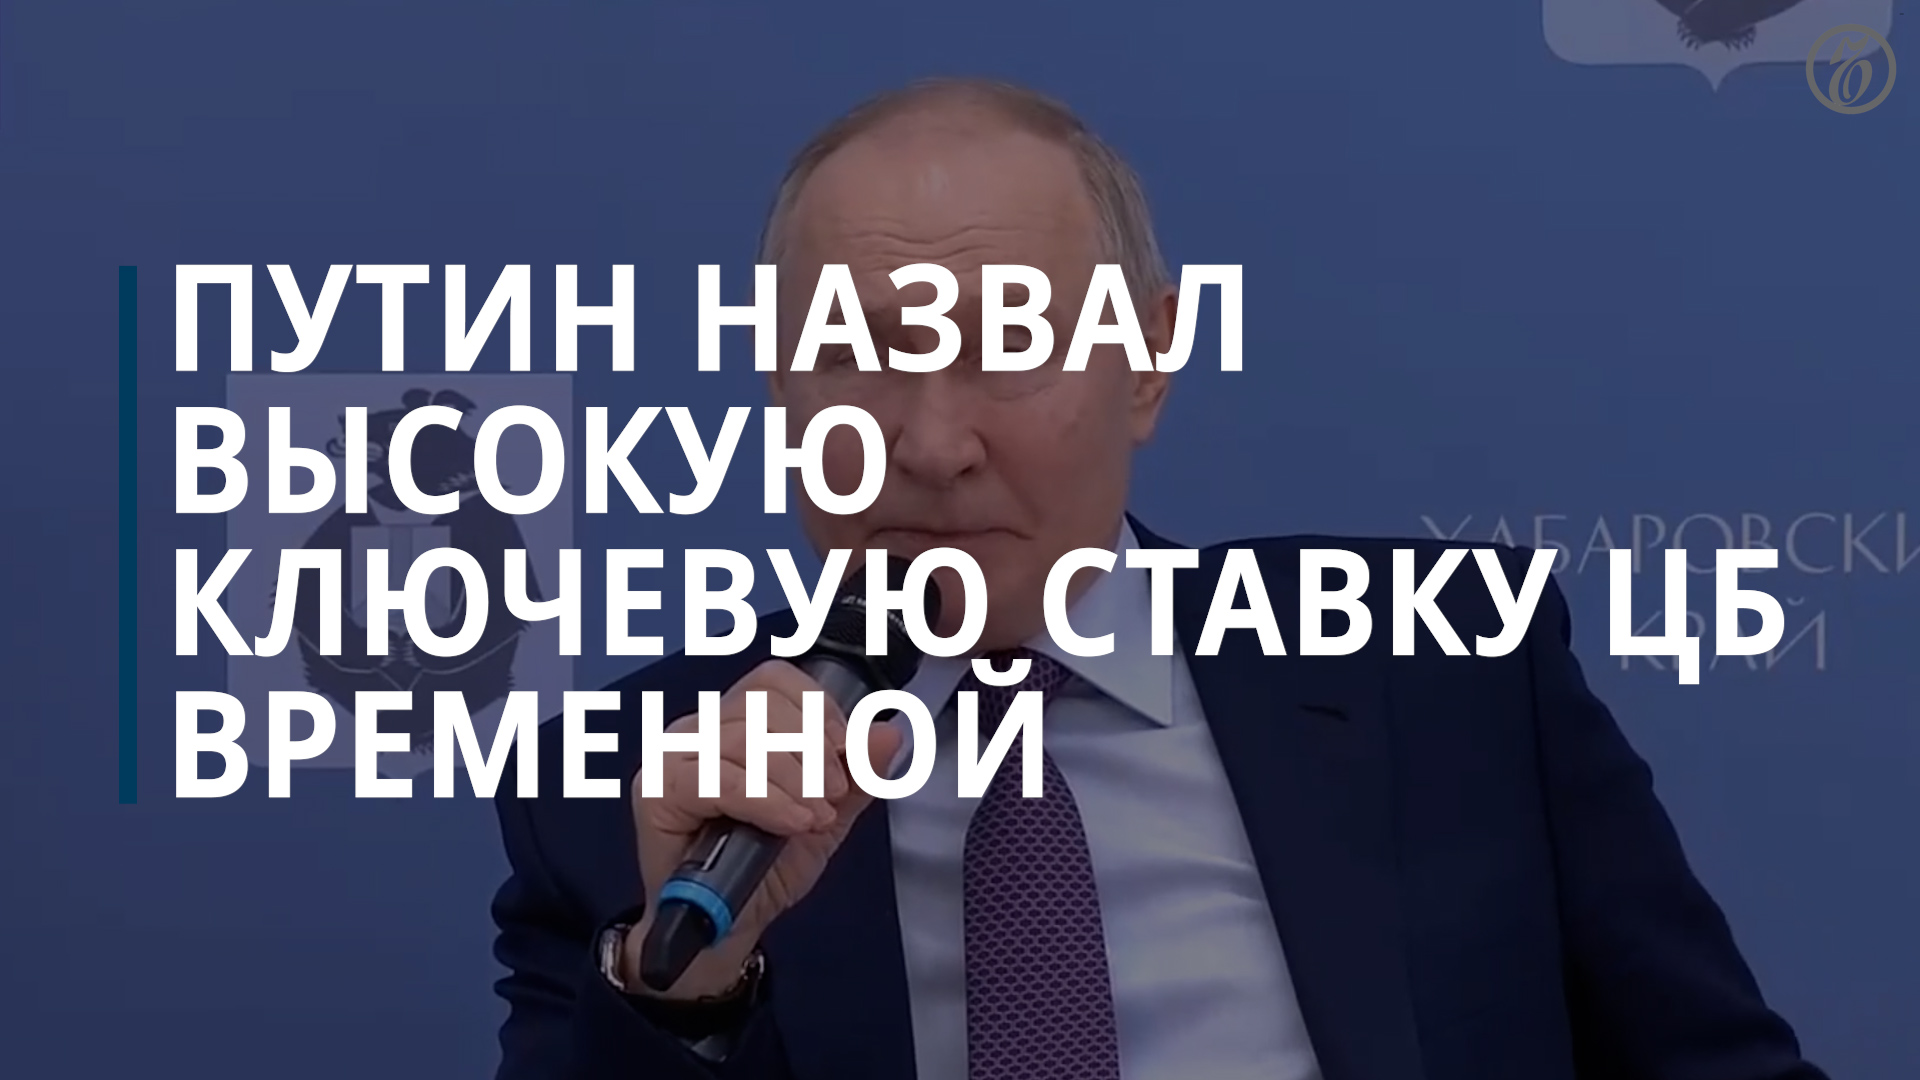 Путин назвал высокую ключевую ставку ЦБ временным явлением — Коммерсантъ